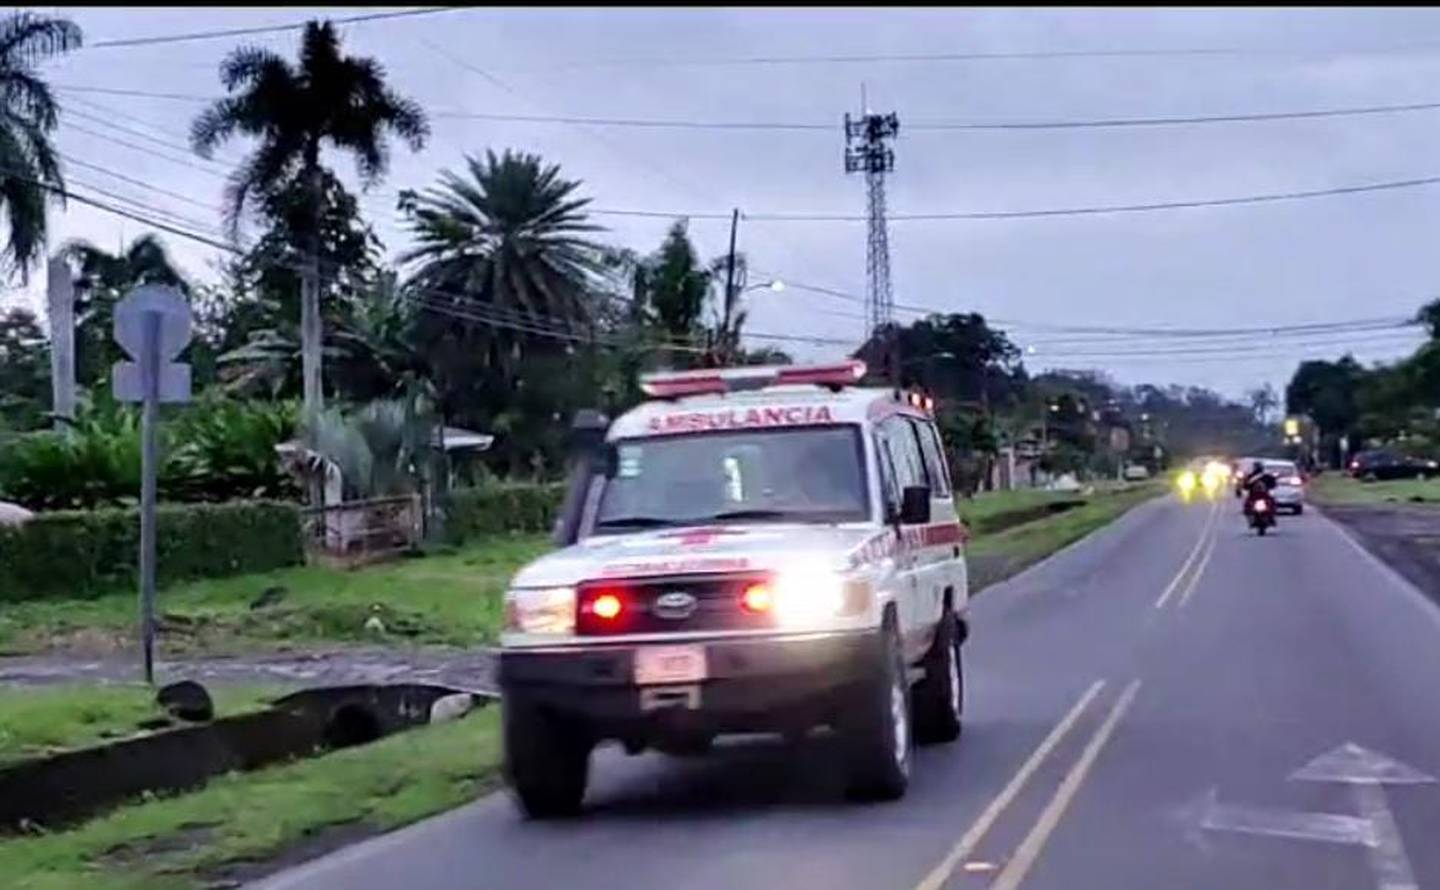 Ante el accidente del camión volcado, la Cruz Roja movilizó ambulancias básicas, avanzadas y vehículos operativos. En la foto, una unidad lleva heridos en la carretera de San Rafael, Guápiles, Limón-